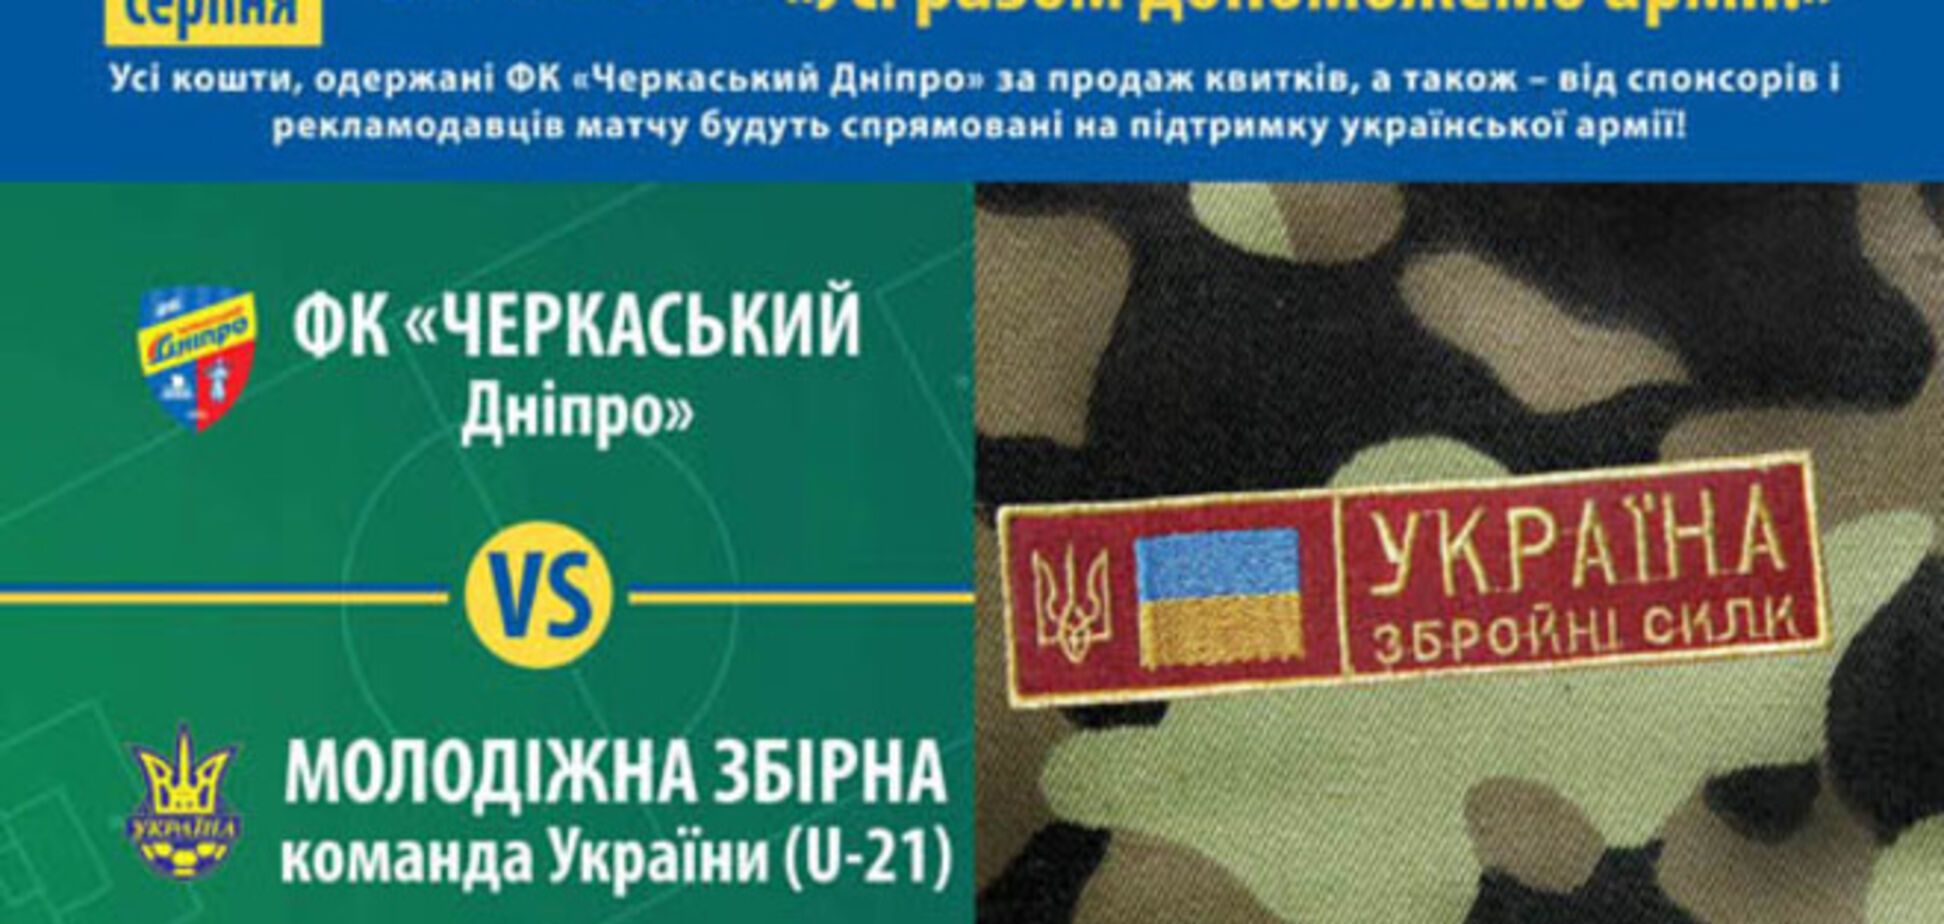 Молодежная сборная Украины проведет матч в поддержку армии